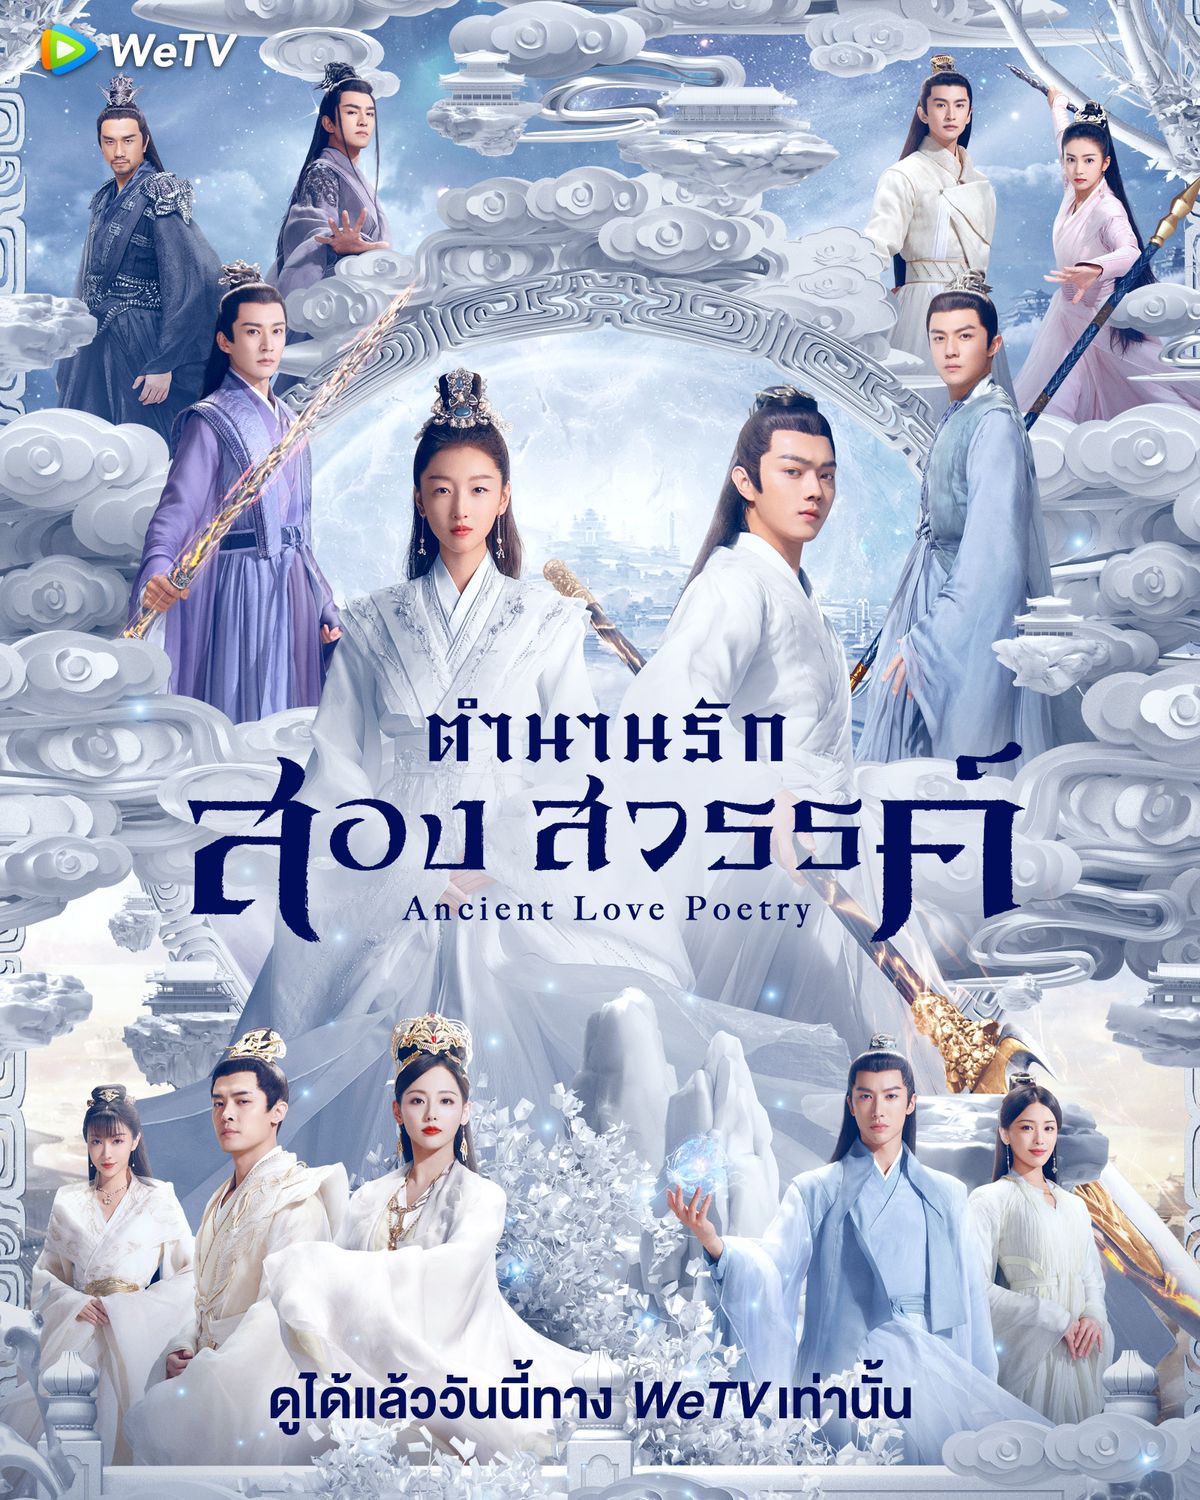 แนะนำ 4 หนังจีนสุดฮิต สนุกครบรส ที่ไม่ควรพลาด ! ธันวาคม 2021 - Sale Here